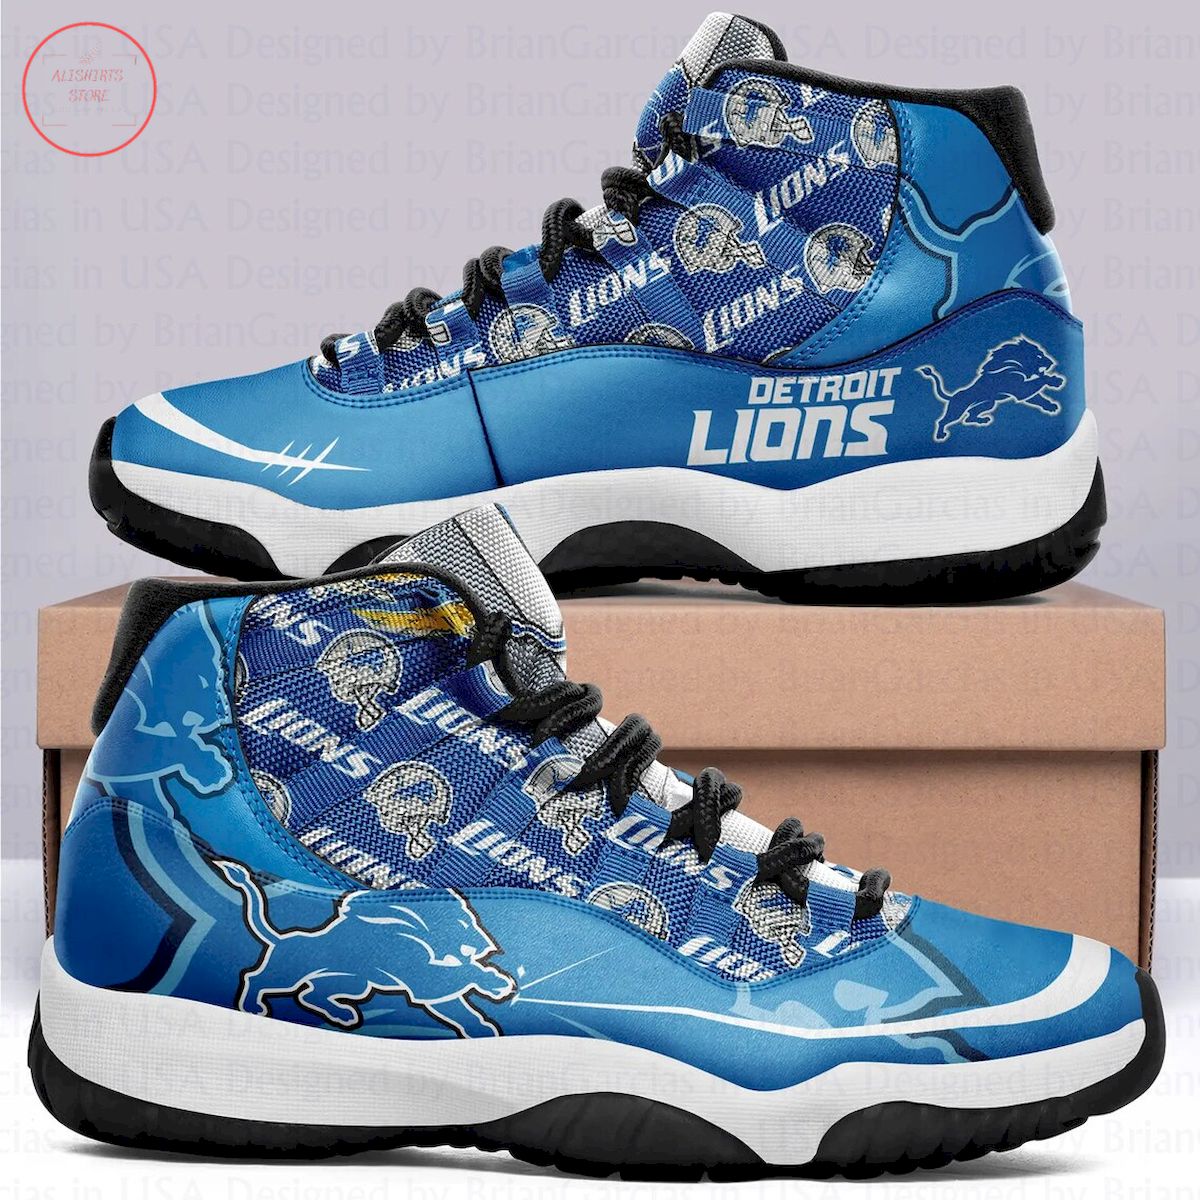 Detroit Lions Air Jordan 11 Sneakers